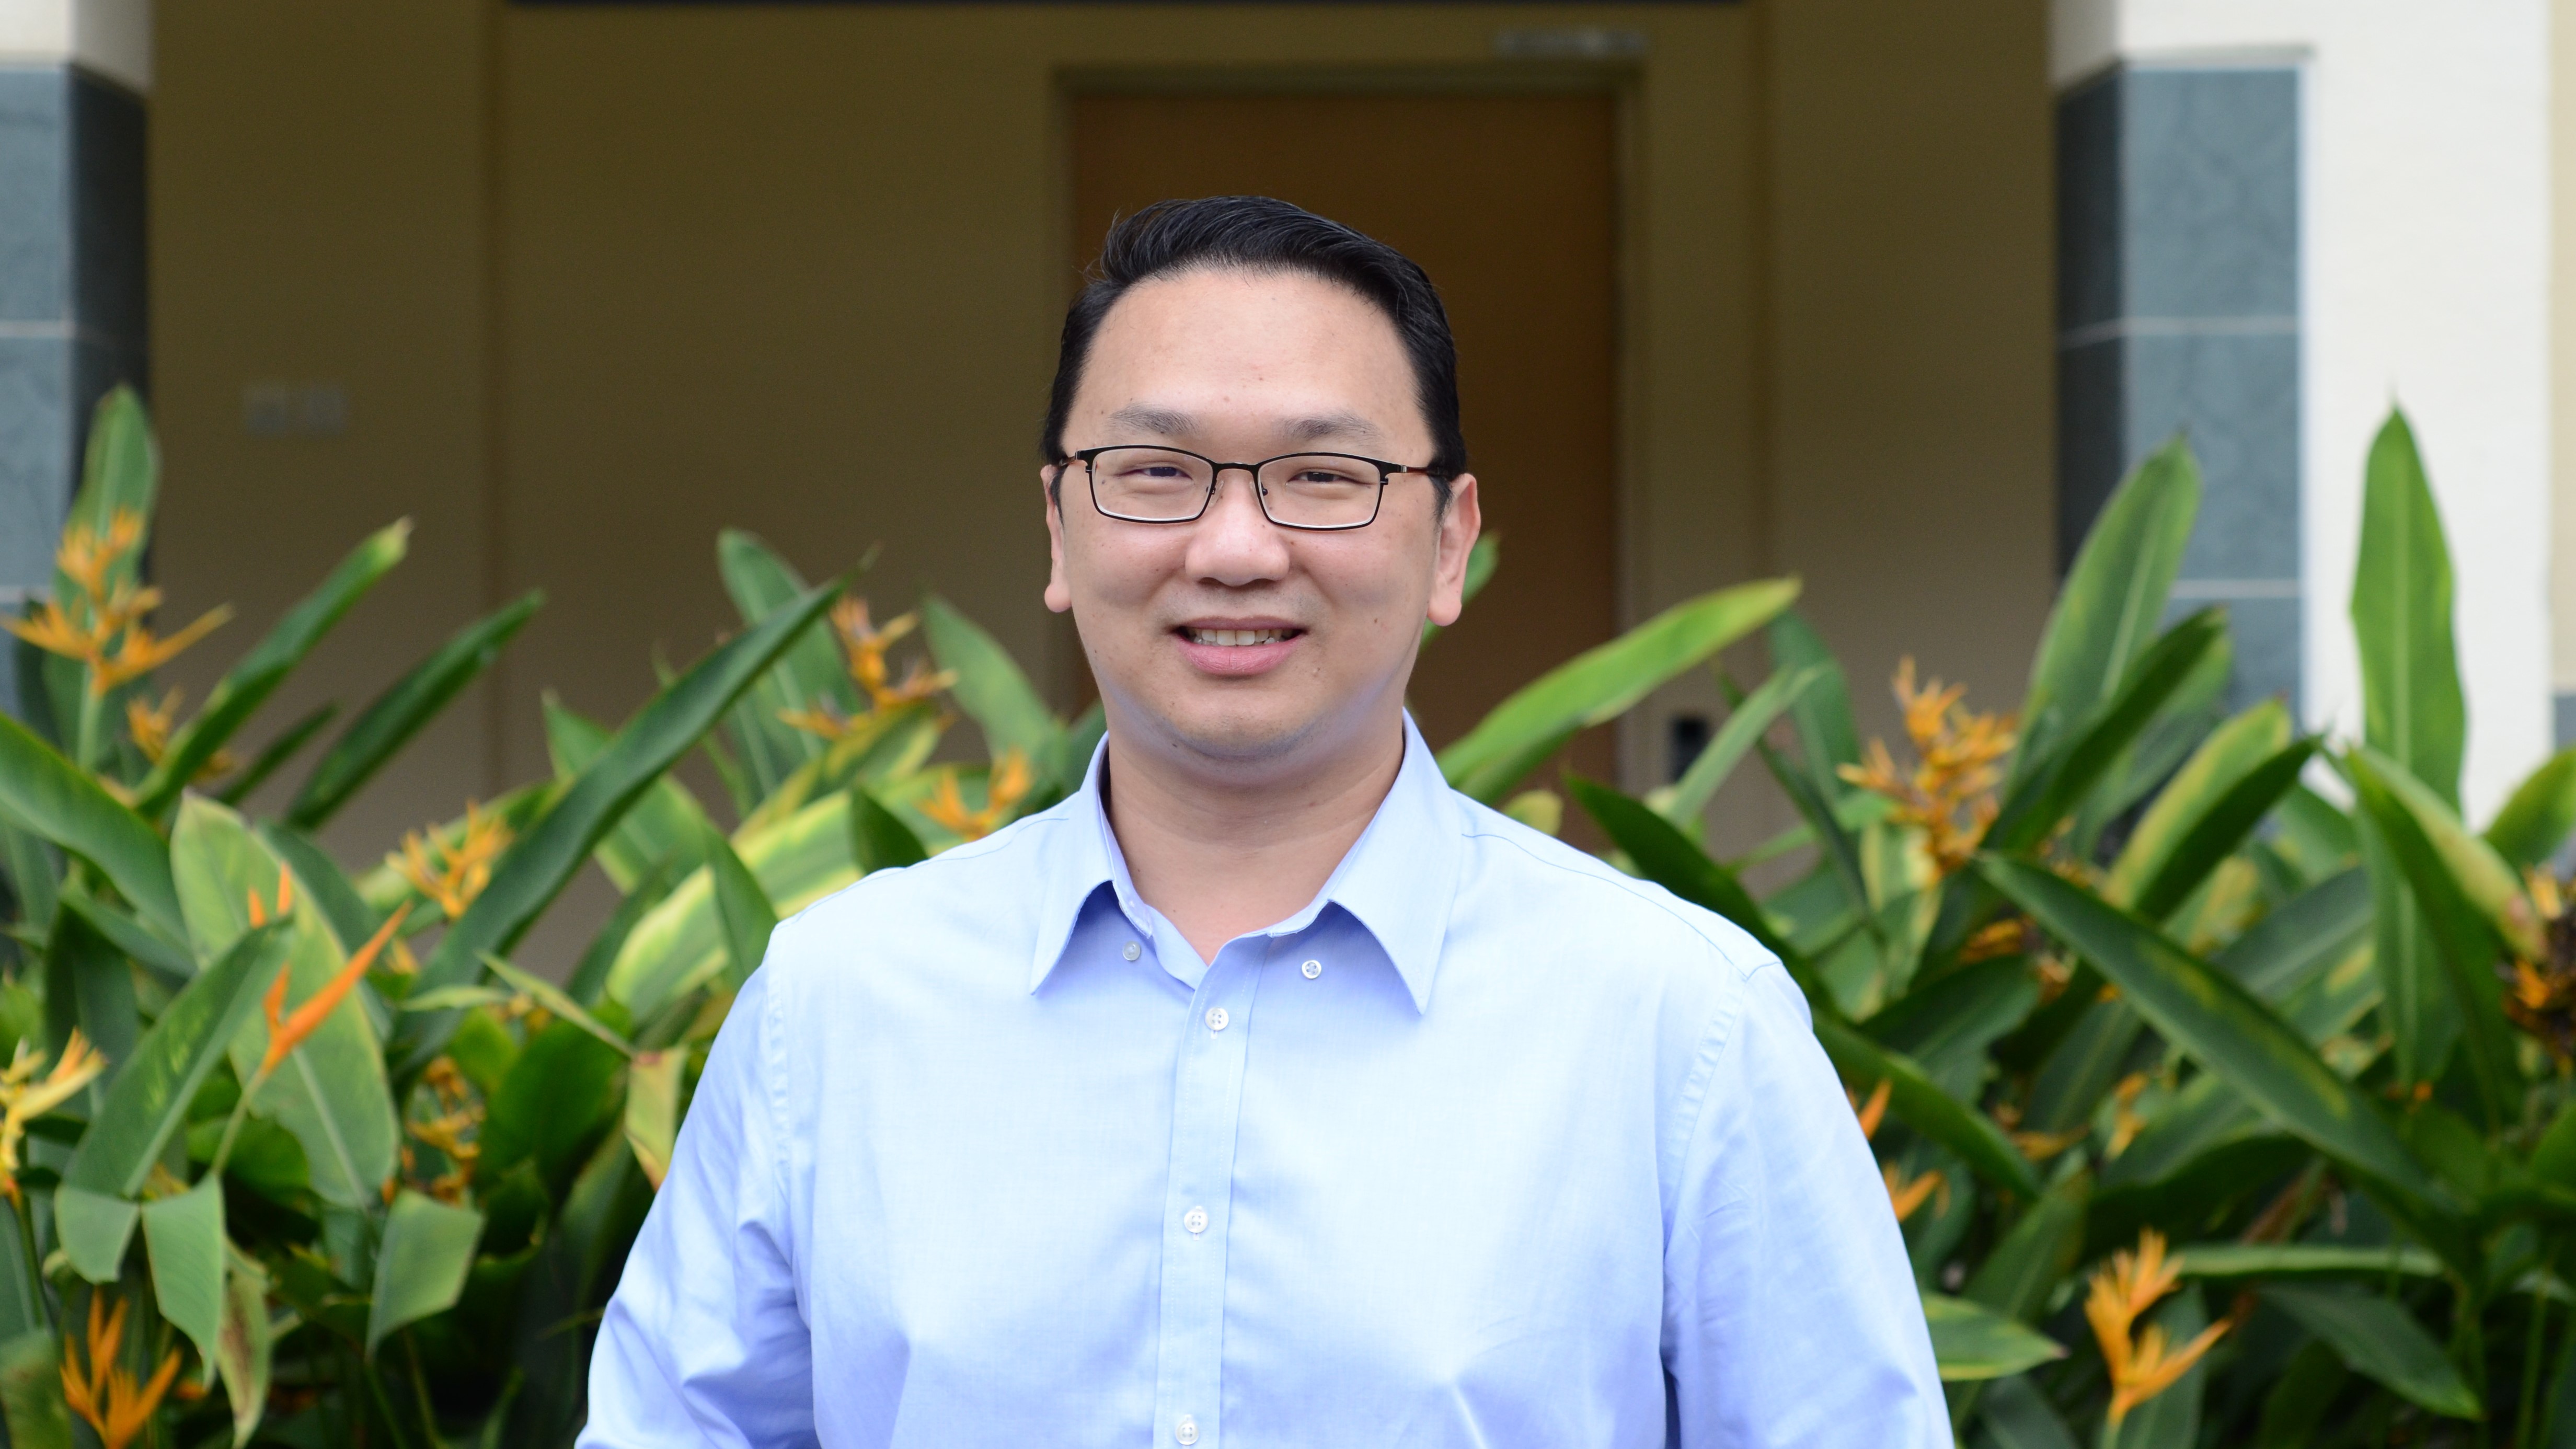 Asst Prof Teo Wei Peng